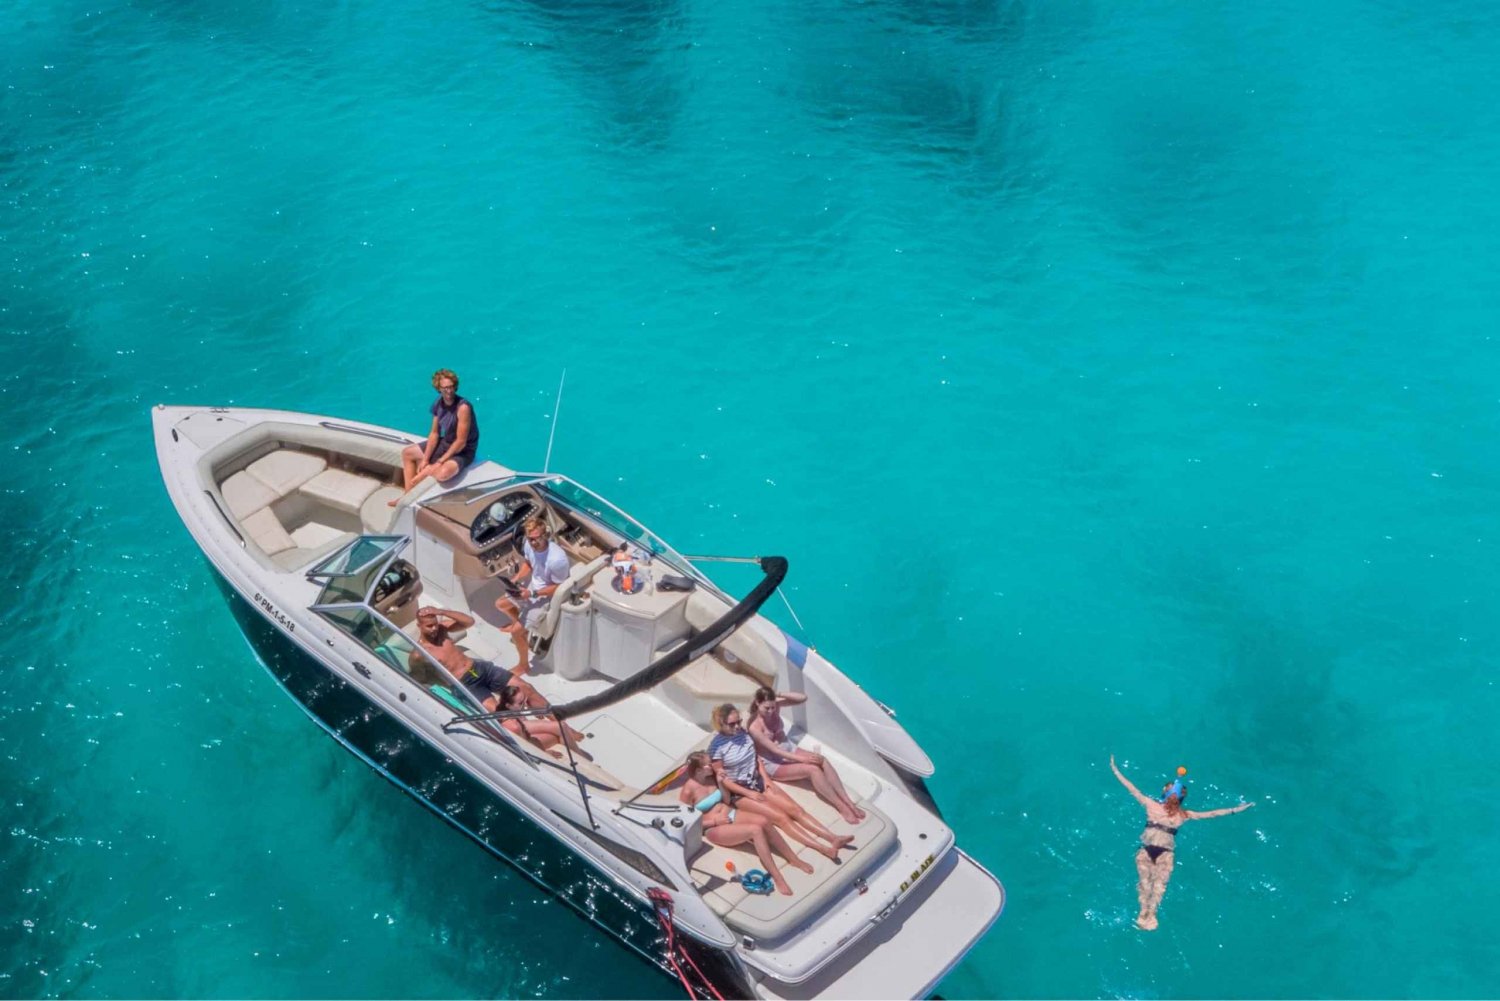 Palma de Mallorca: El Blade - Luxury Yacht Trip